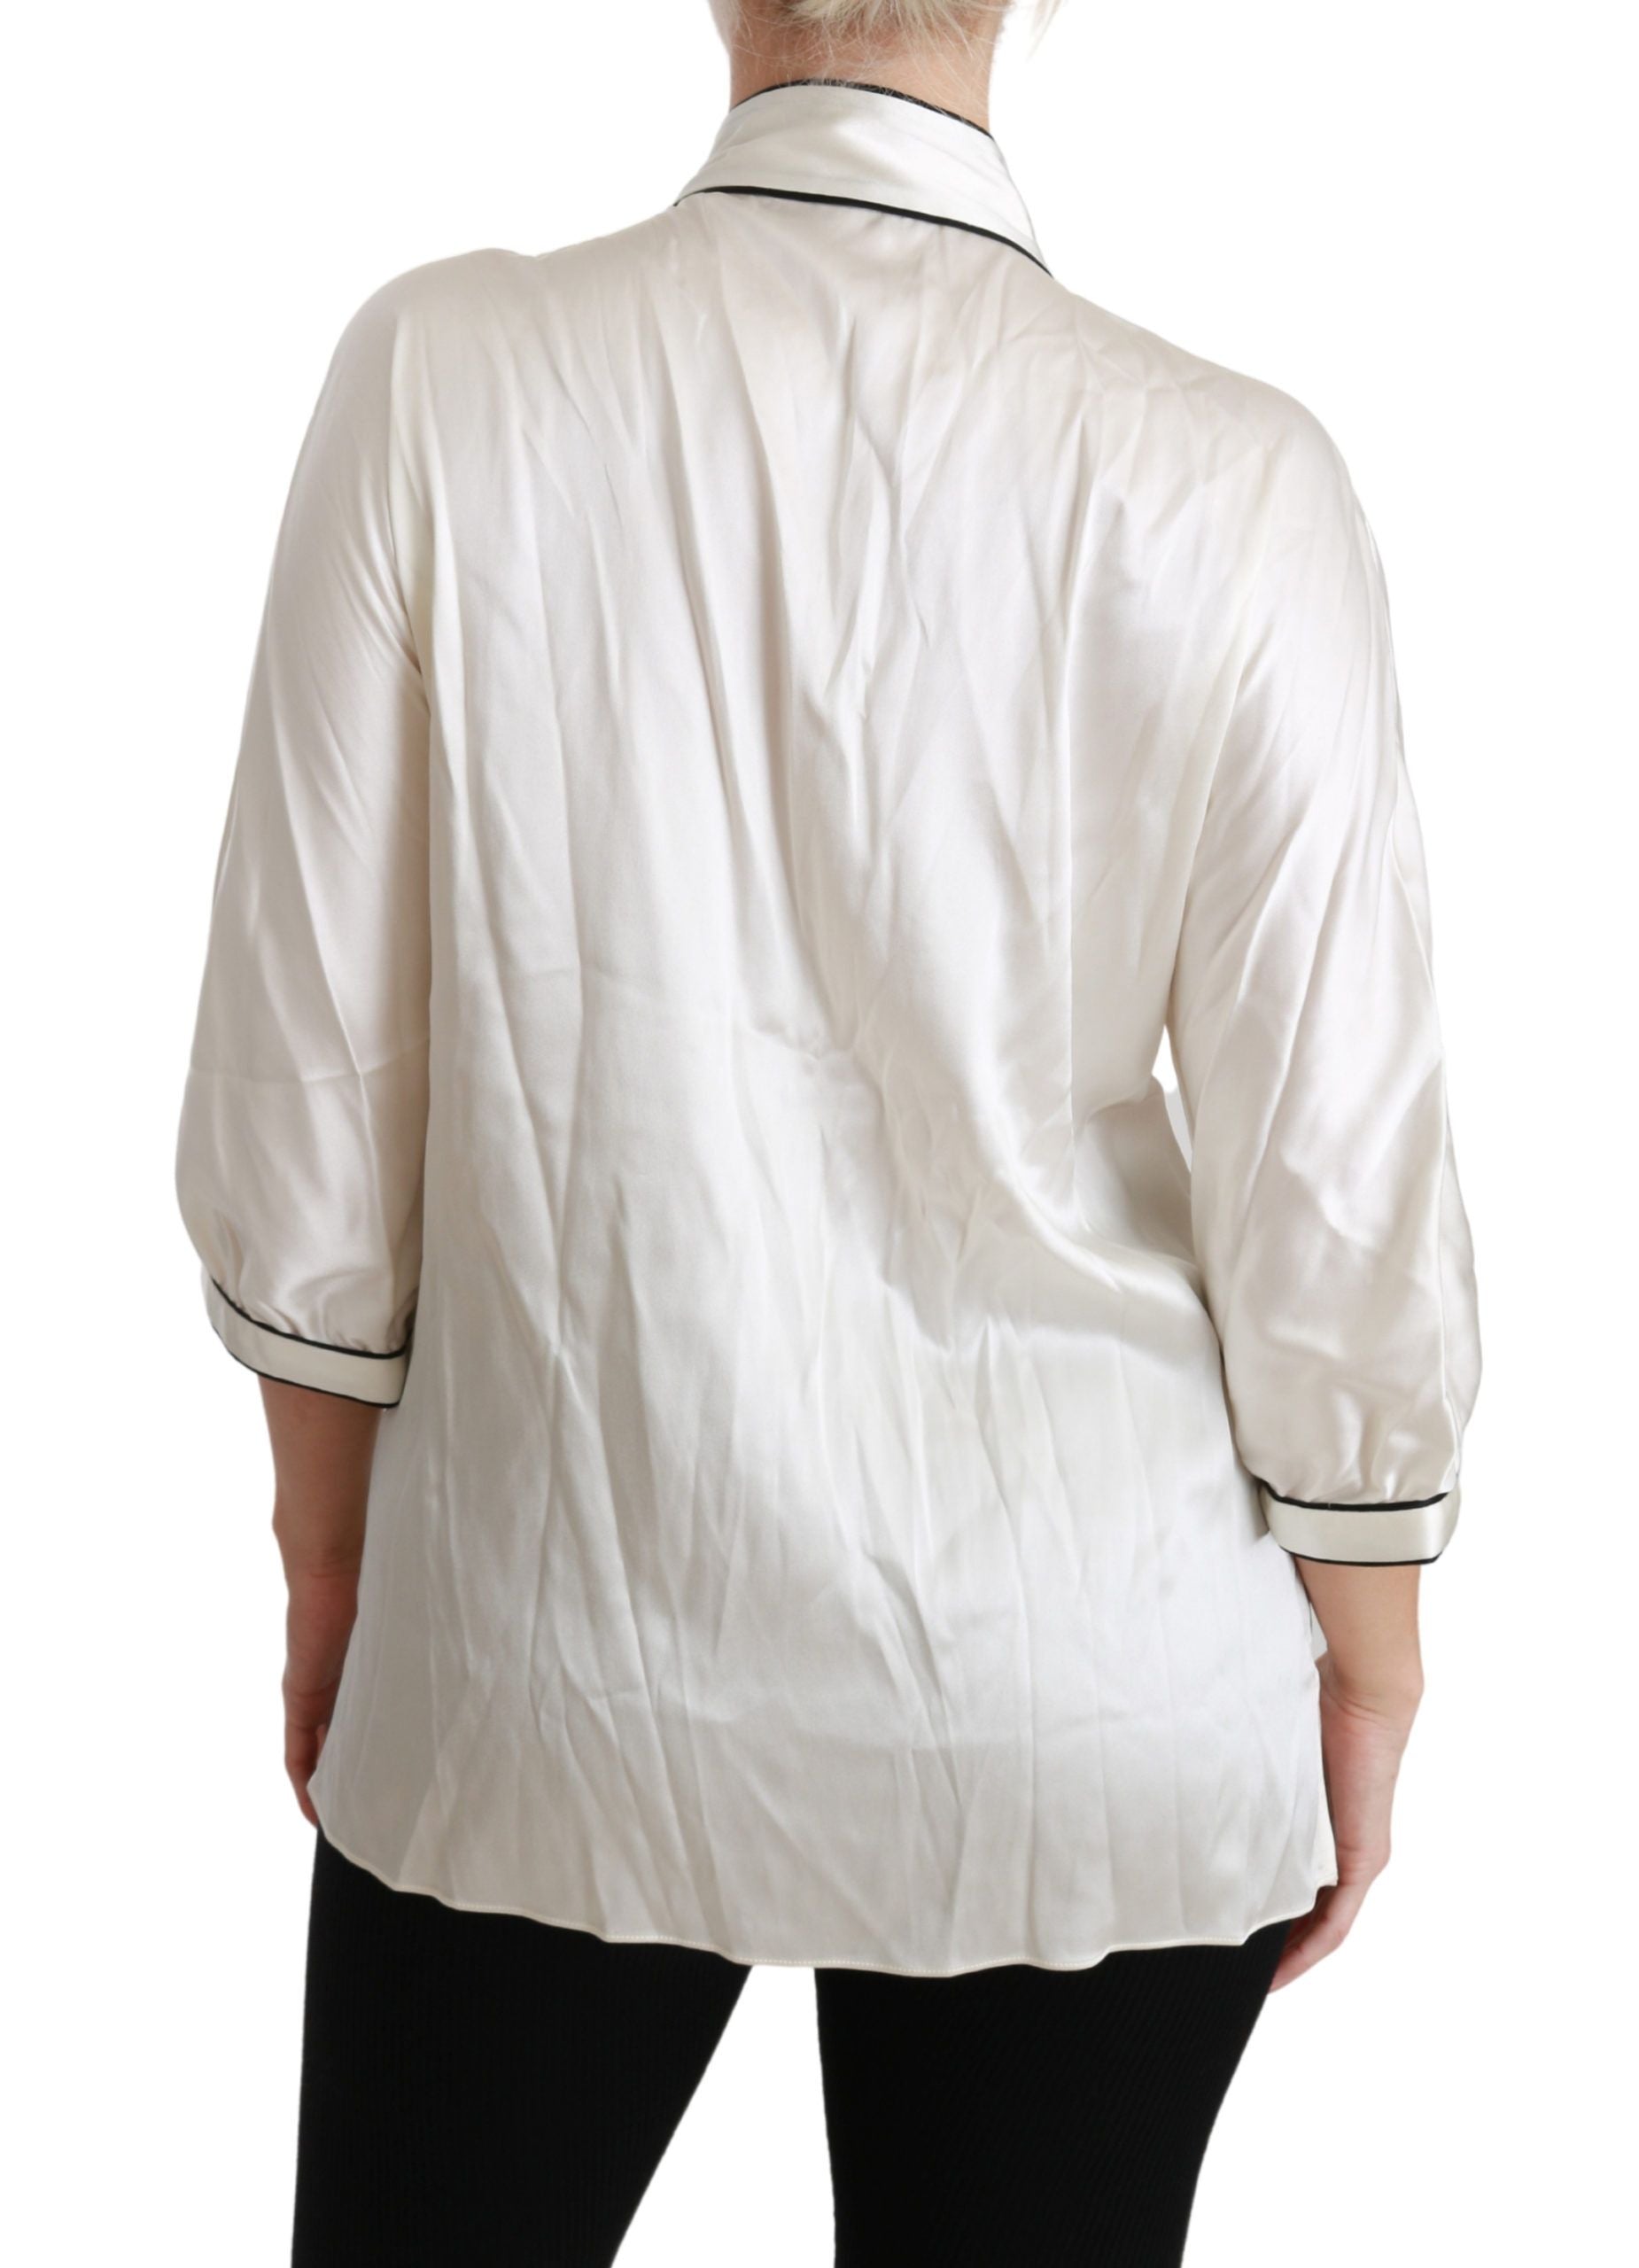 Dolce & Gabbana Beige 3/4 Sleeve Shirt Blouse Silk Top